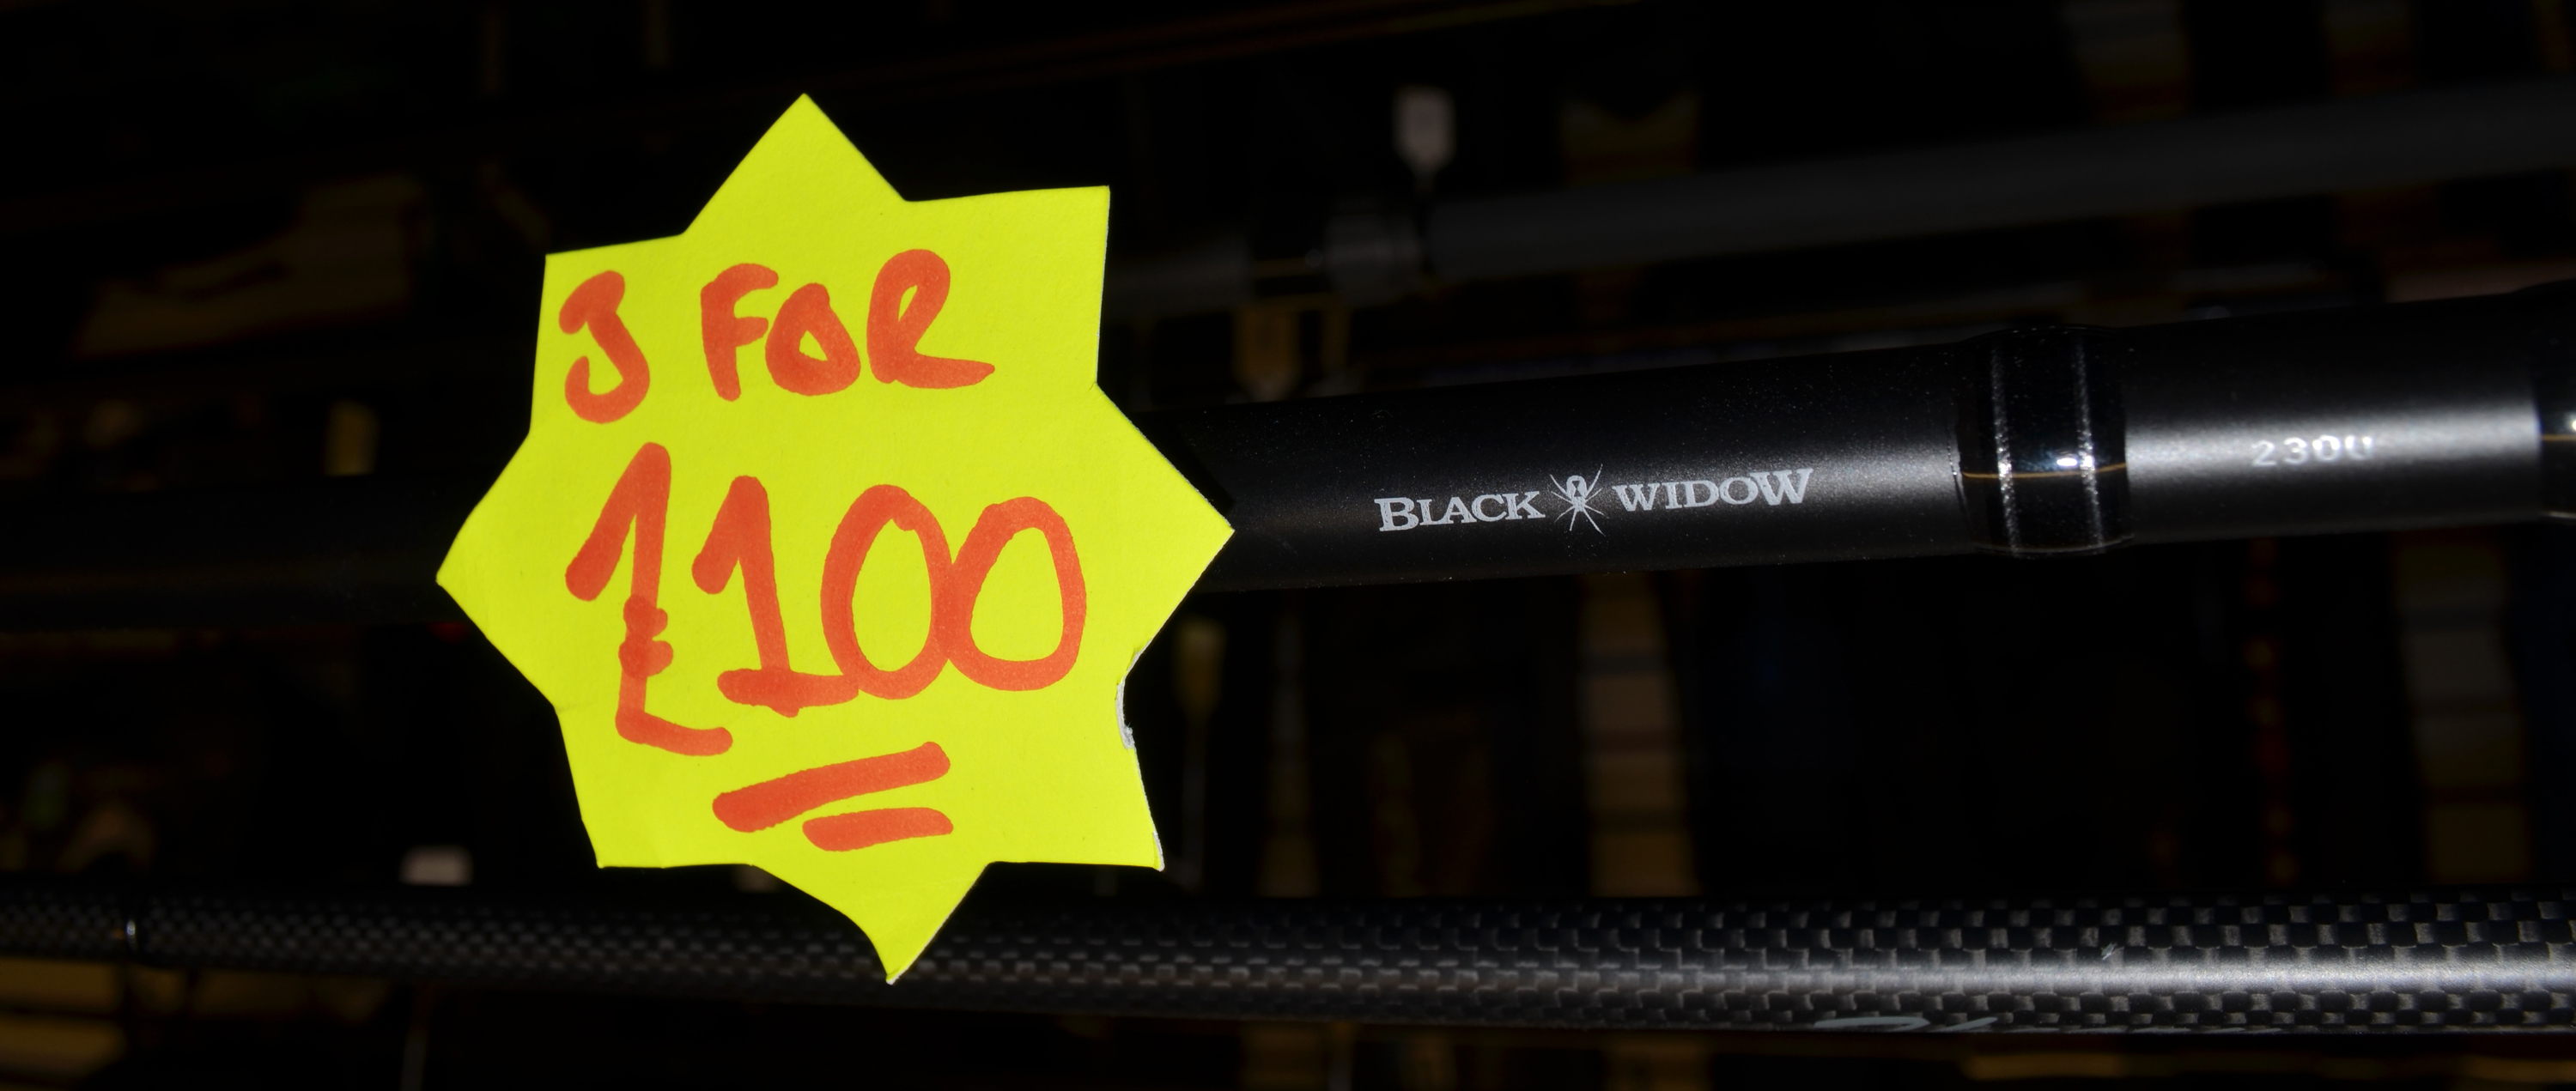 3 Daiwa Black Widdow Carp Rods - ONLY £100!